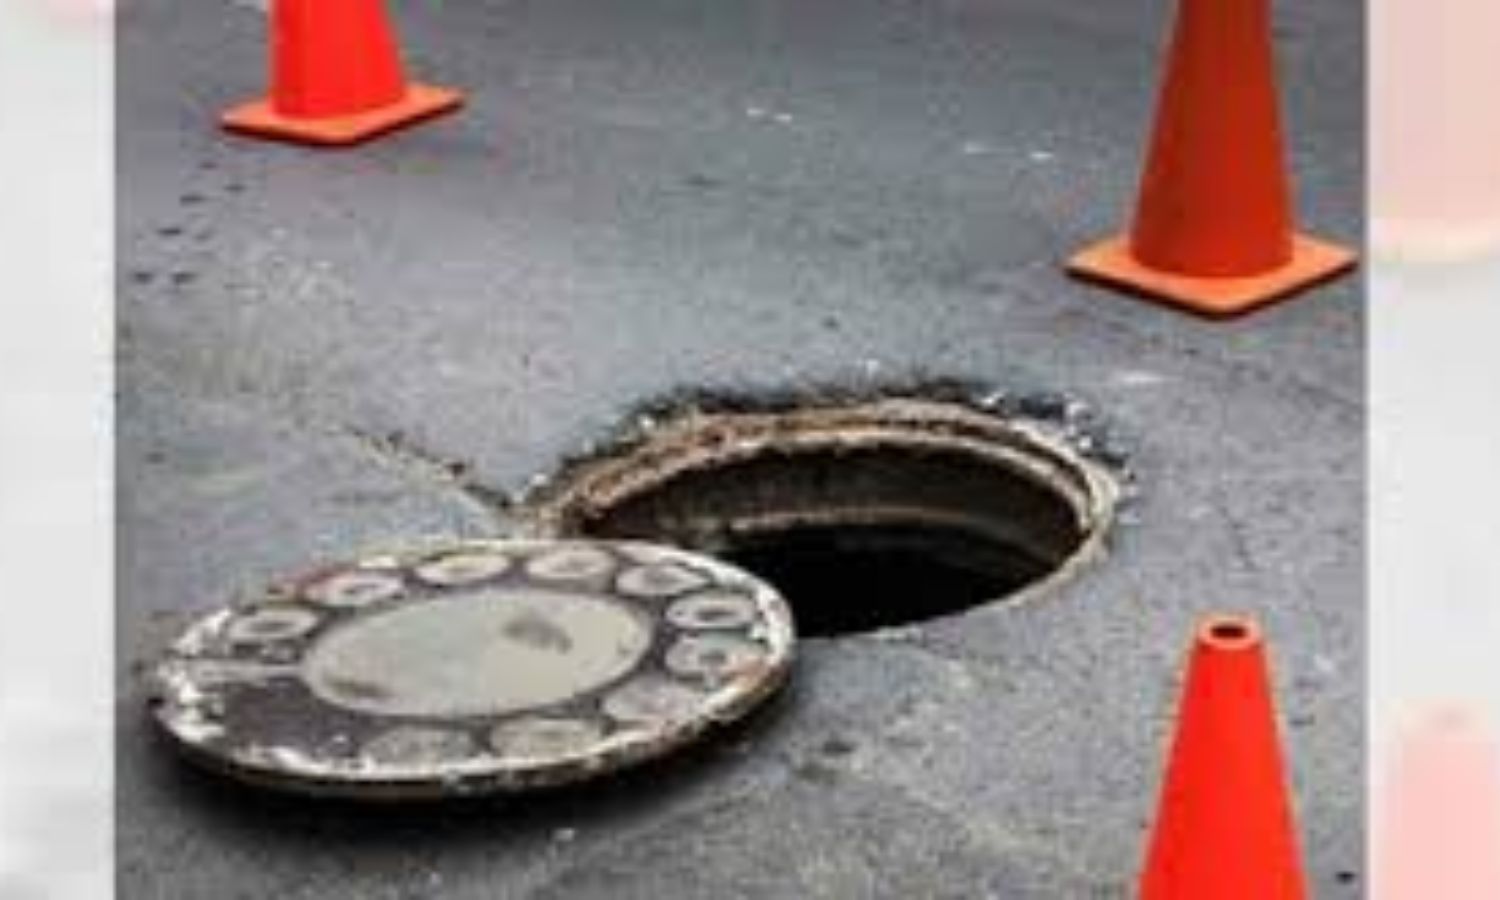 Unauthorized Manhole Opening Warning